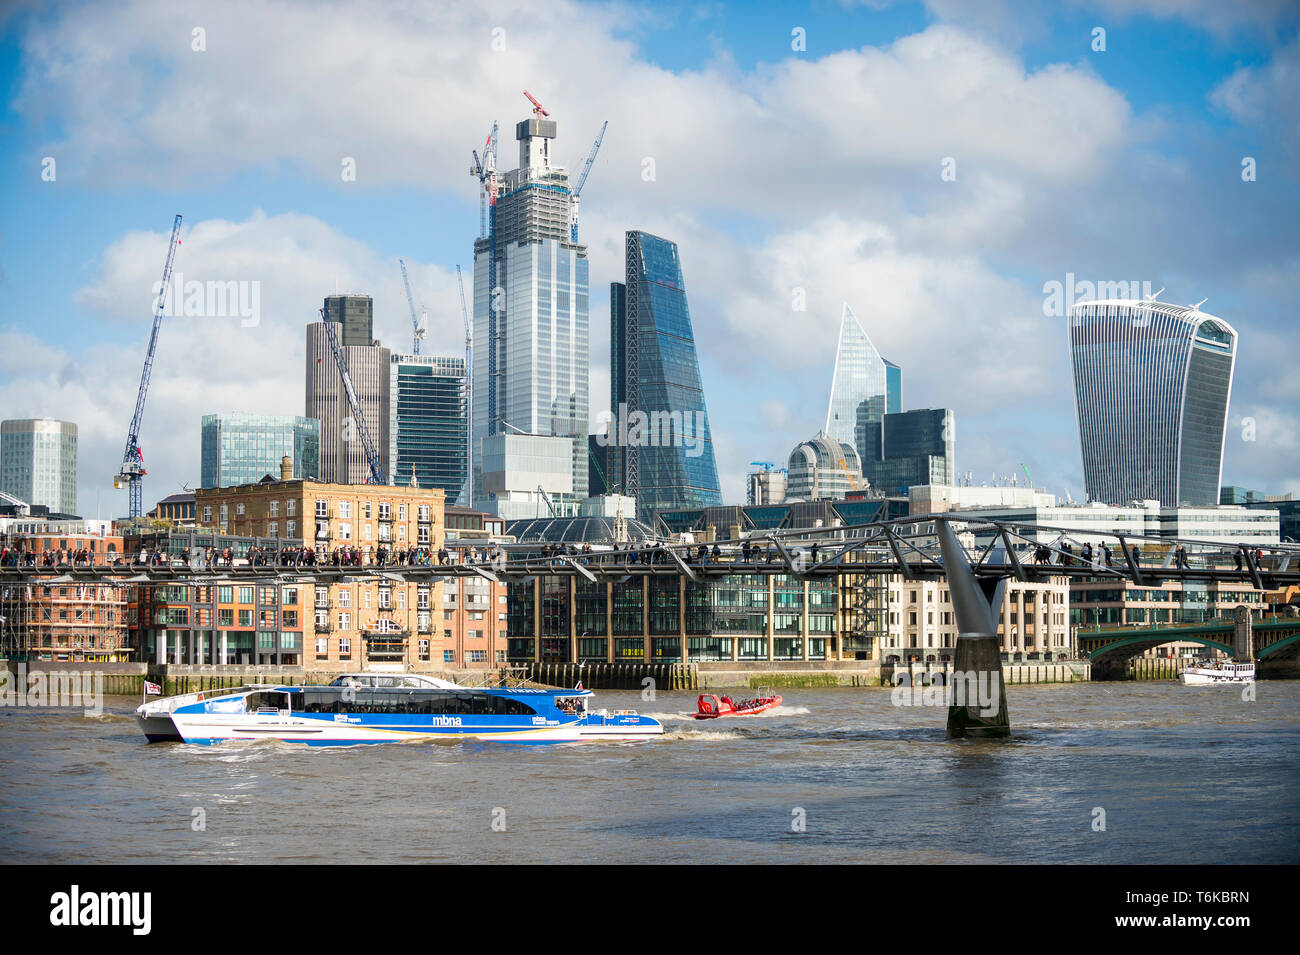 Londres - le 10 novembre 2018 : un catamaran Thames Clipper parrainé par MBNA Bank passe des gratte-ciel en construction dans le quartier financier de la ville. Banque D'Images